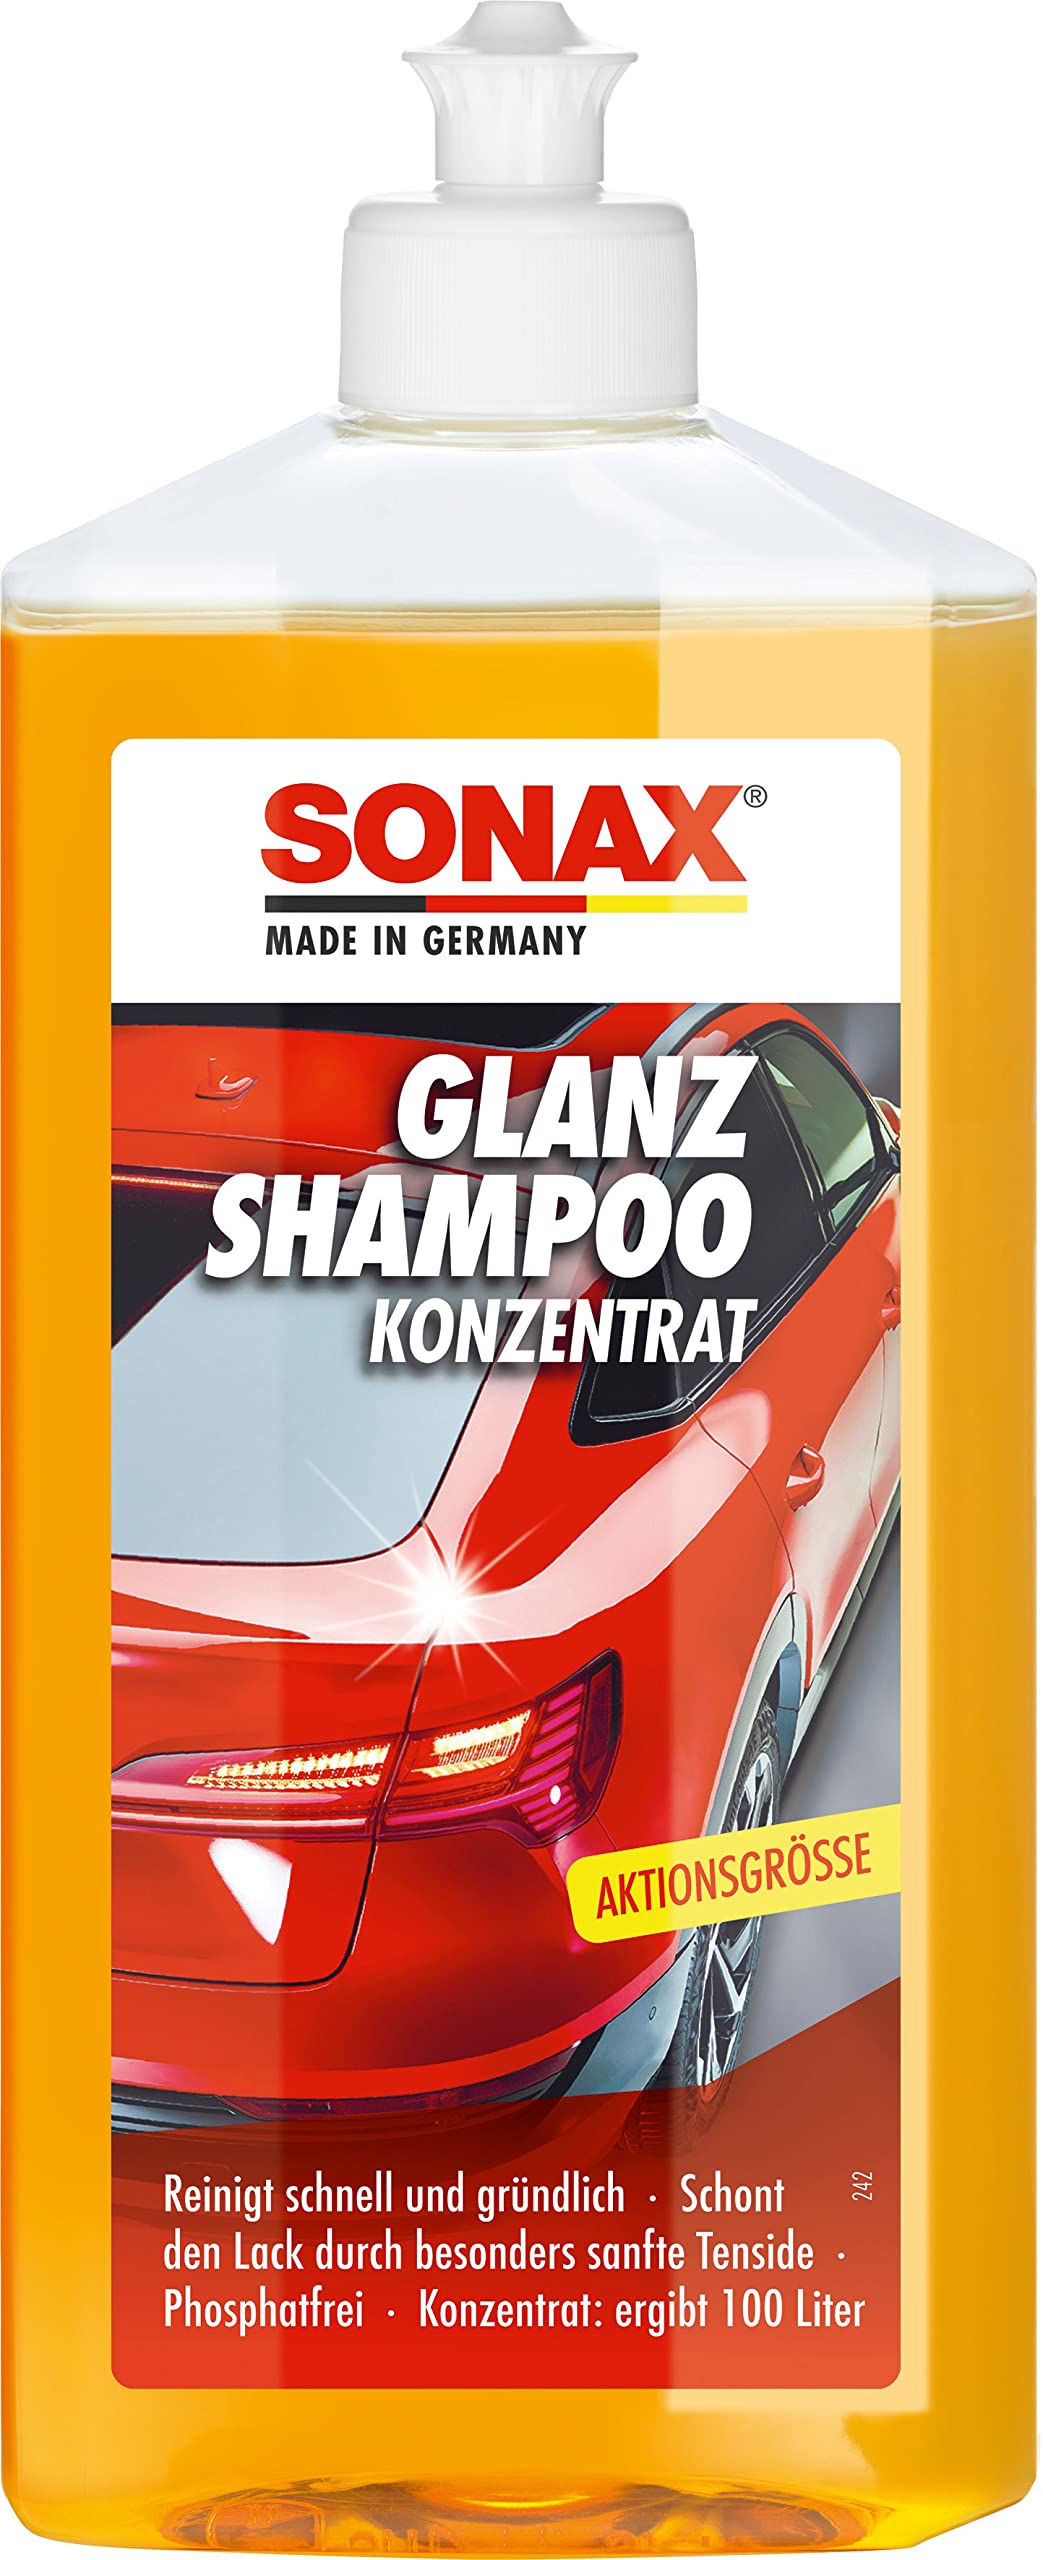 SONAX GlanzShampoo Konzentrat (500 ml) durchdringt und löst Schmutz gründlich, ohne Angreifen der Wachs-Schutzschicht | Art-Nr. 03142000 von SONAX